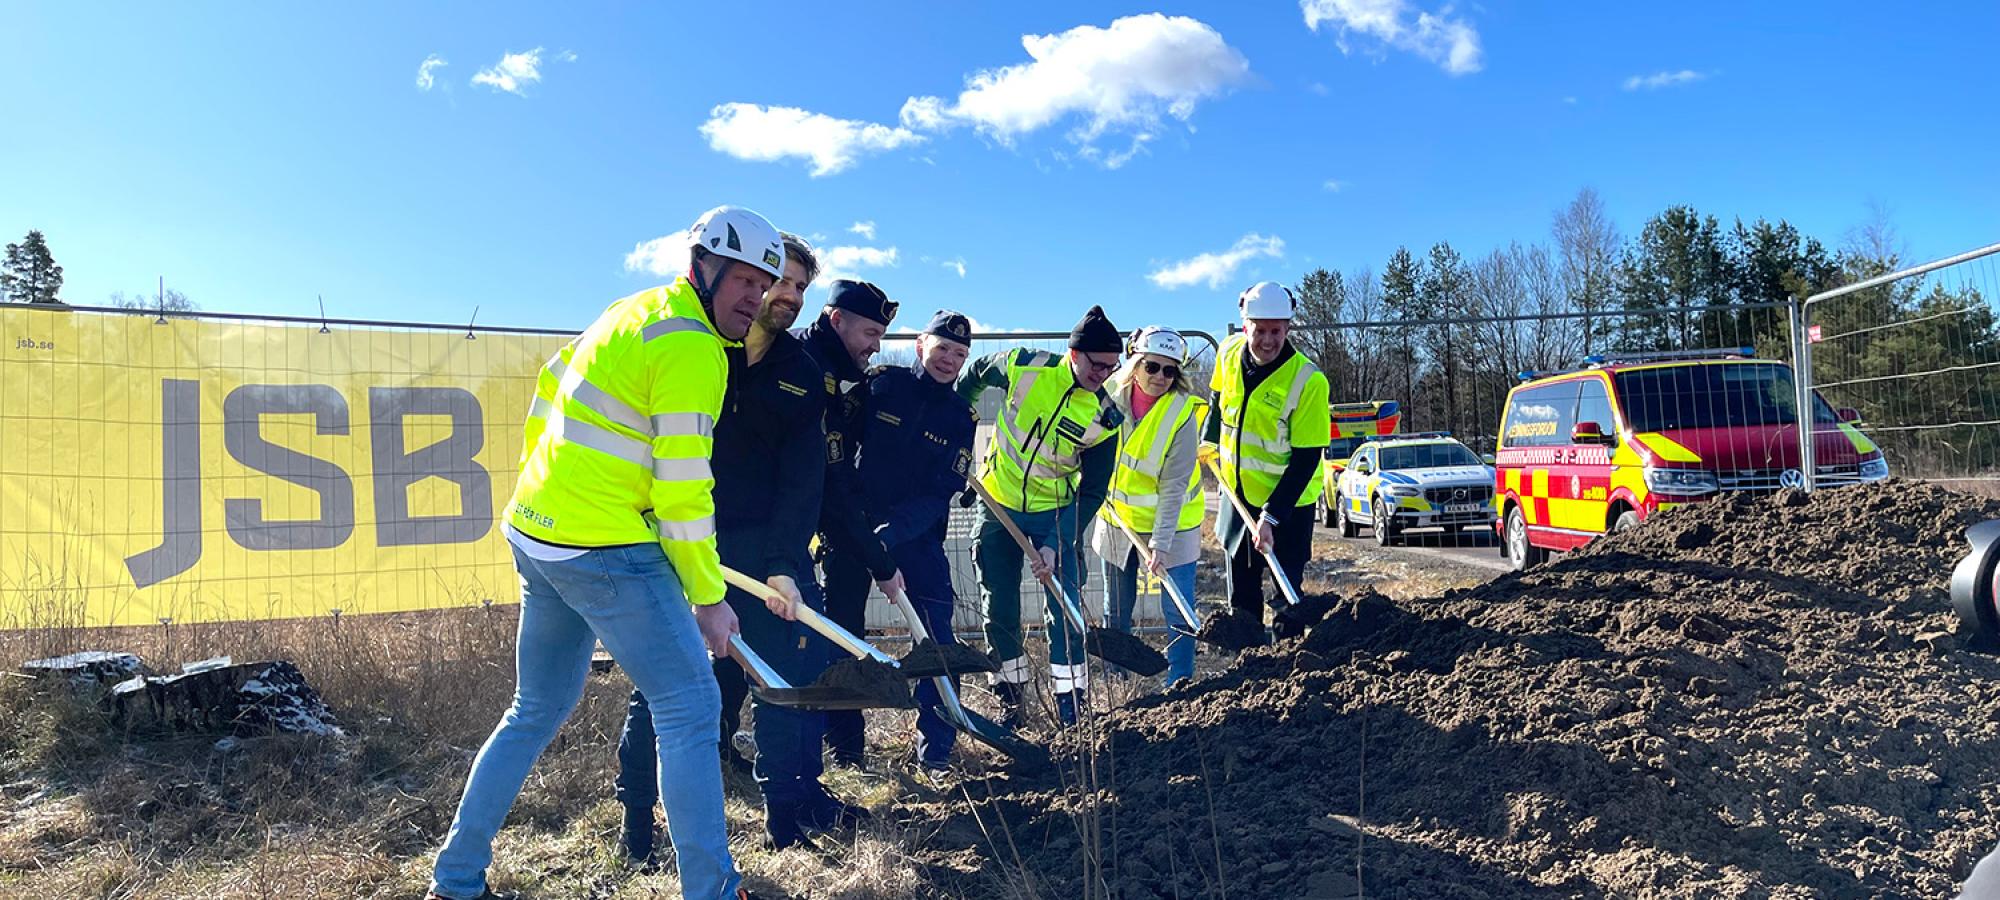 Måndagen den 27 mars sattes spaden i marken för Osby kommuns nya Blåljushus innehållande verksamhetslokaler för Ambulans, Polis och Räddningstjänst. JSB Construction AB står som totalentreprenör för projektet och beställare är Osby kommun.